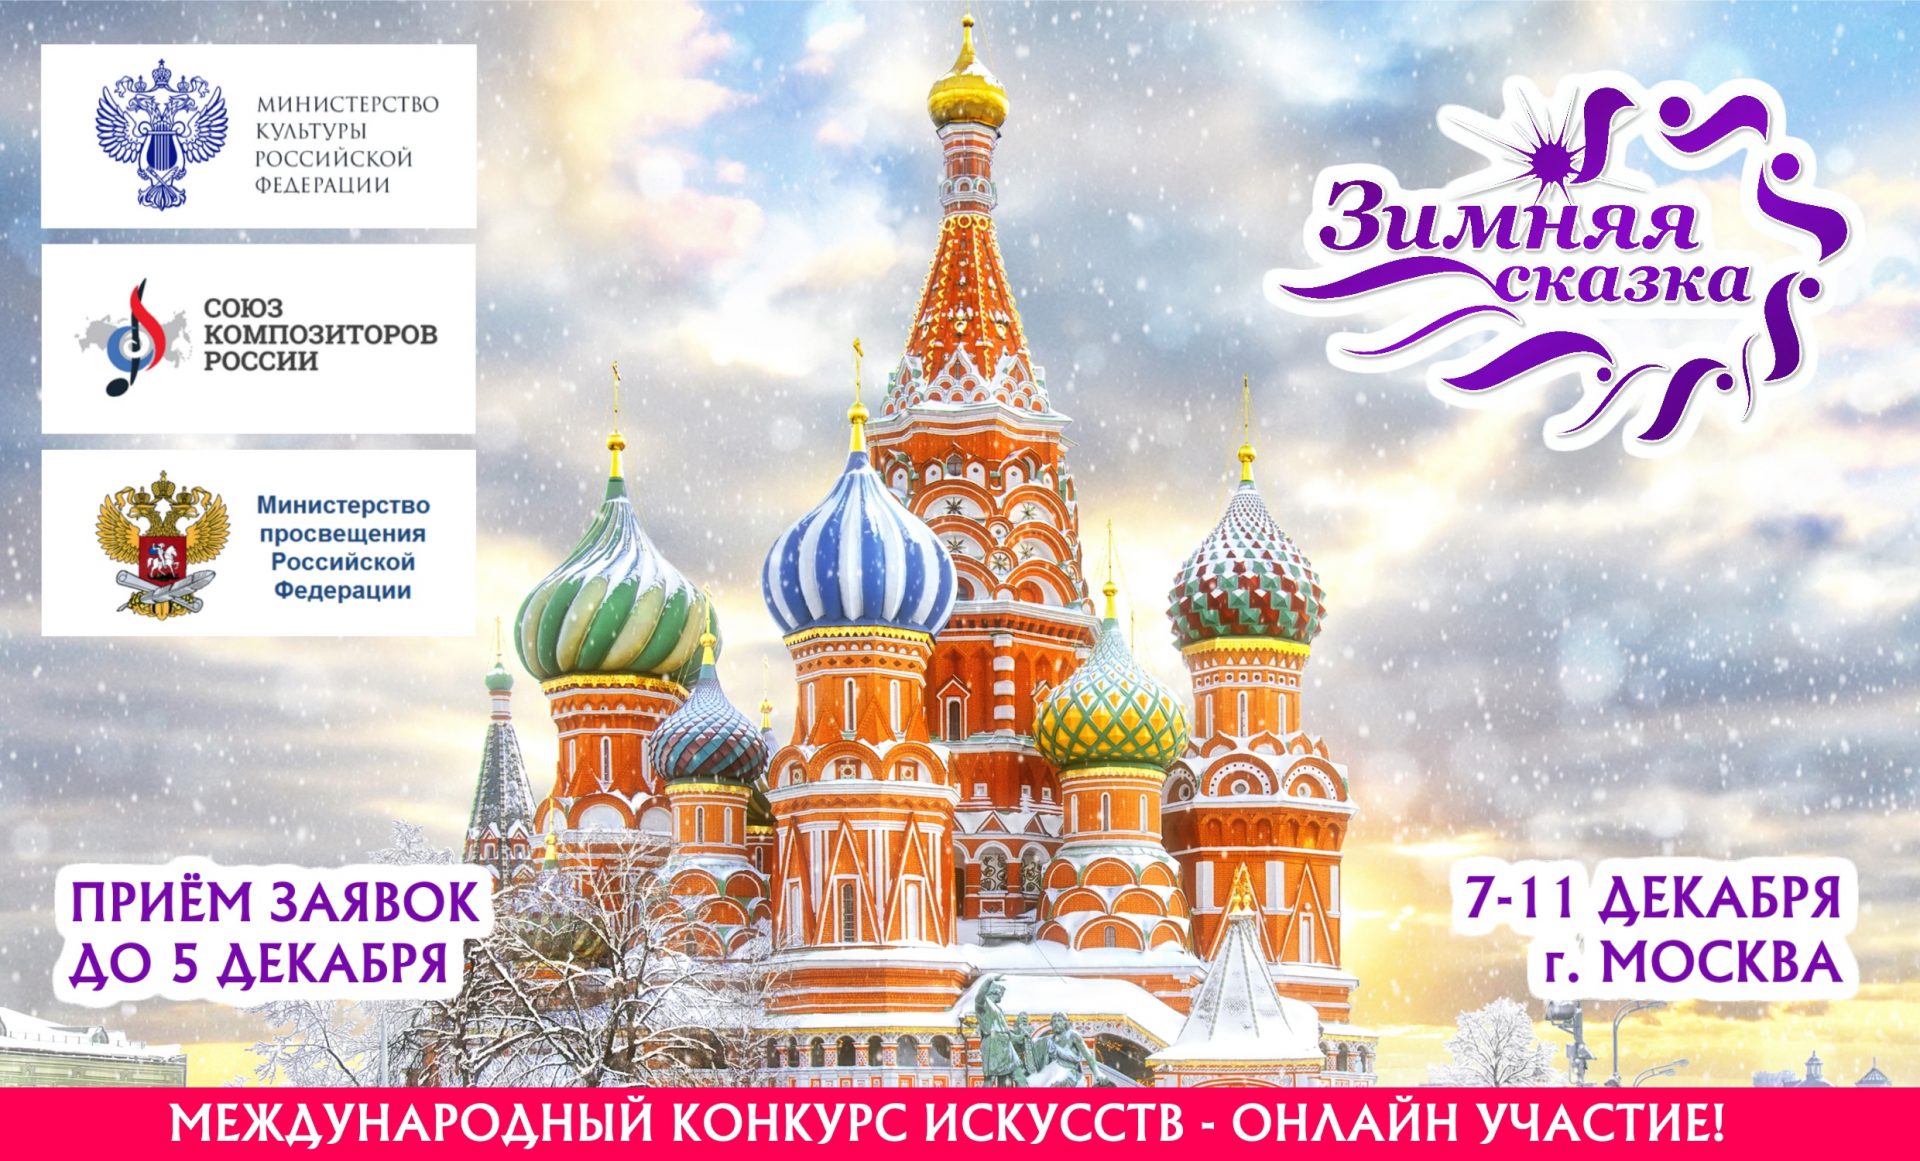 16 апреля какой праздник в россии. Приглашаем к участию. Приглашение в Россию зимой картинки. Праздник 4 ноября 2022 православный картинки. Праздники в ноябре картинки для детей.